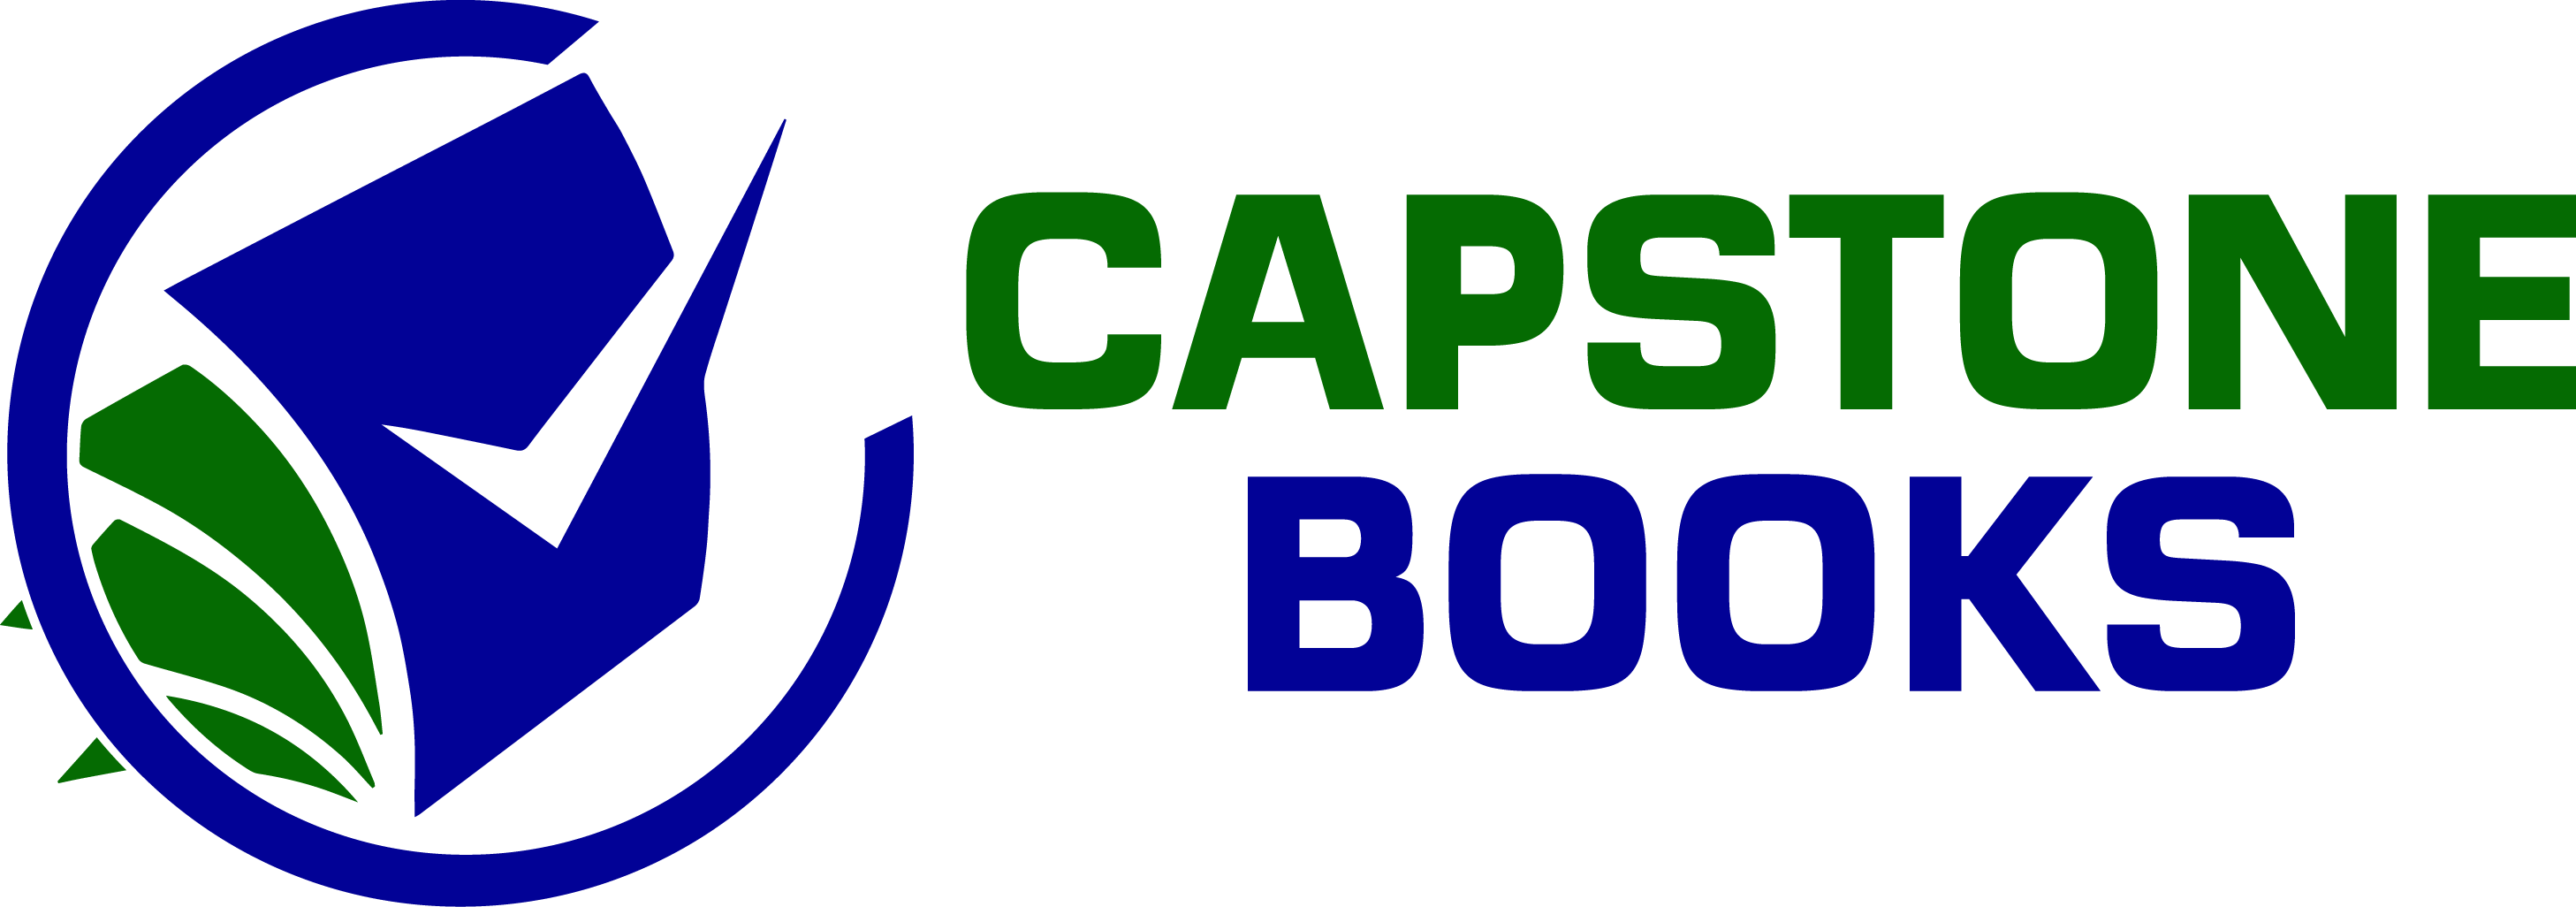 Capstone books